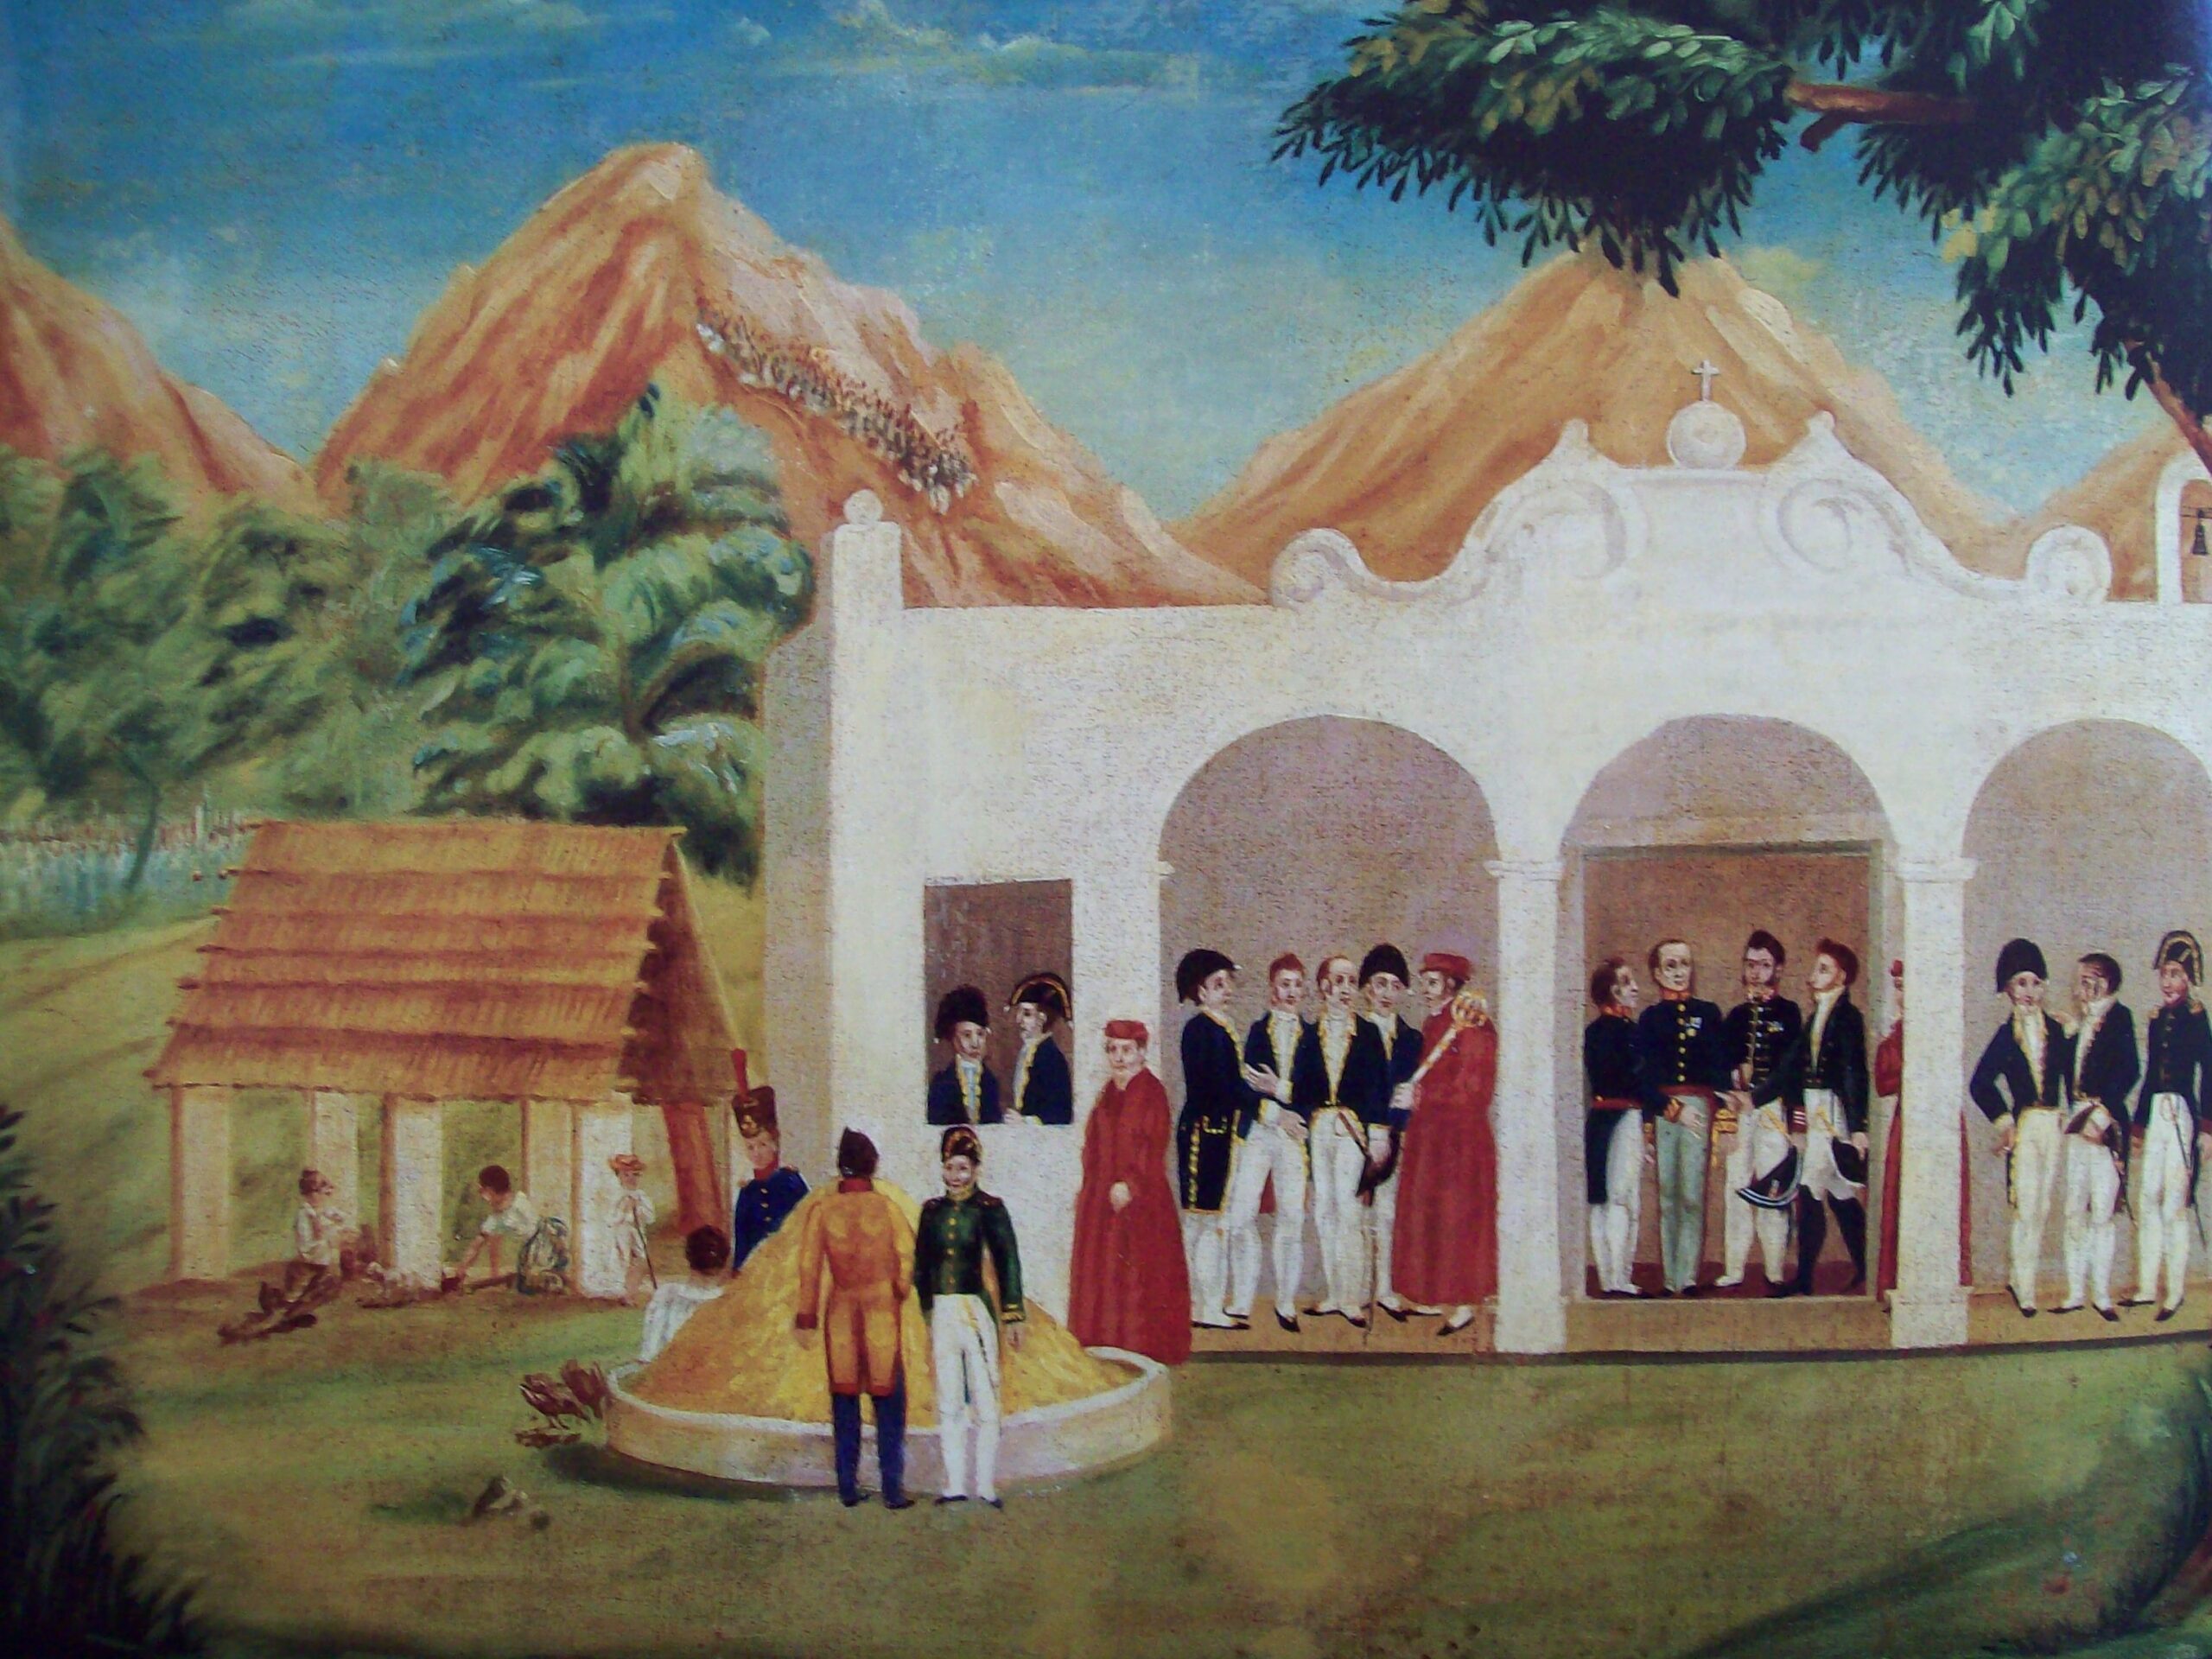 De 1821 - Se firman los Tratados de Córdoba | Ruiz-Healy Times